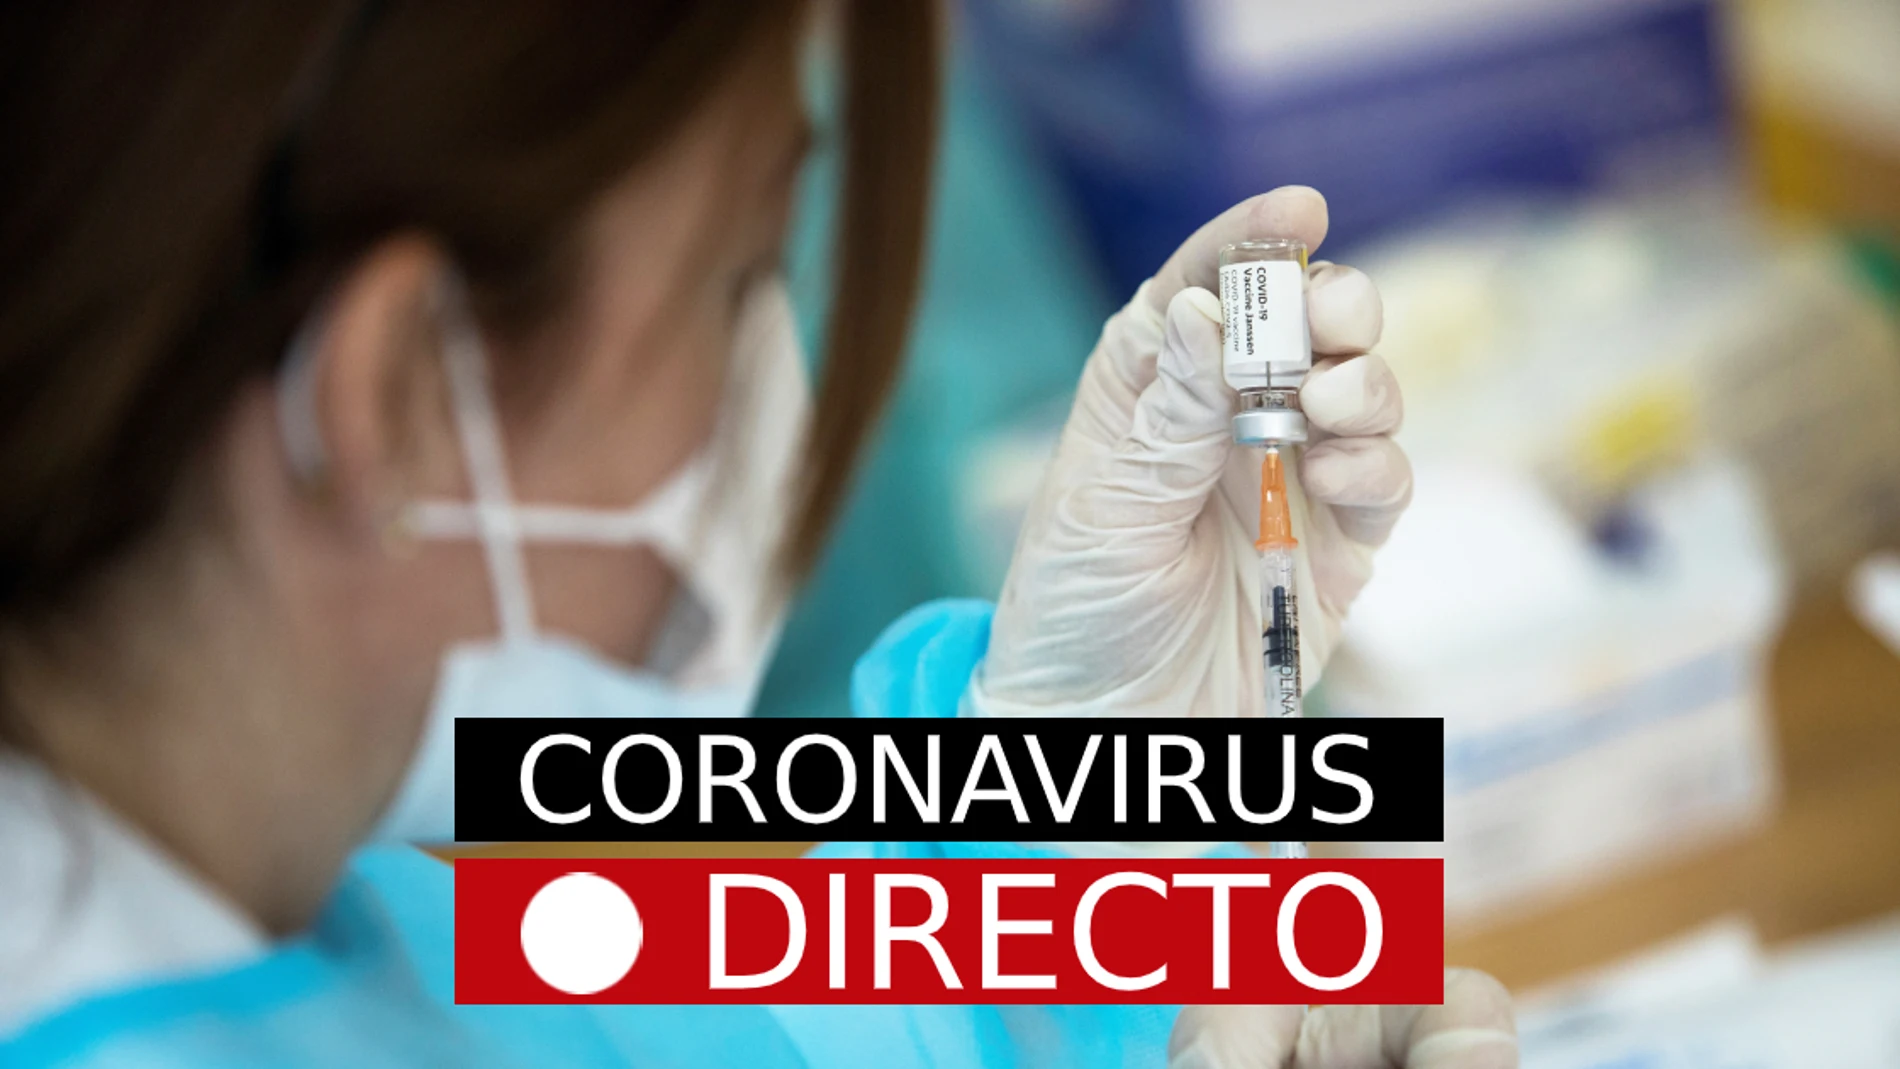 Vacuna COVID-19 | Incidencia del coronavirus en Madrid, casos y nuevas medidas en España, en directo